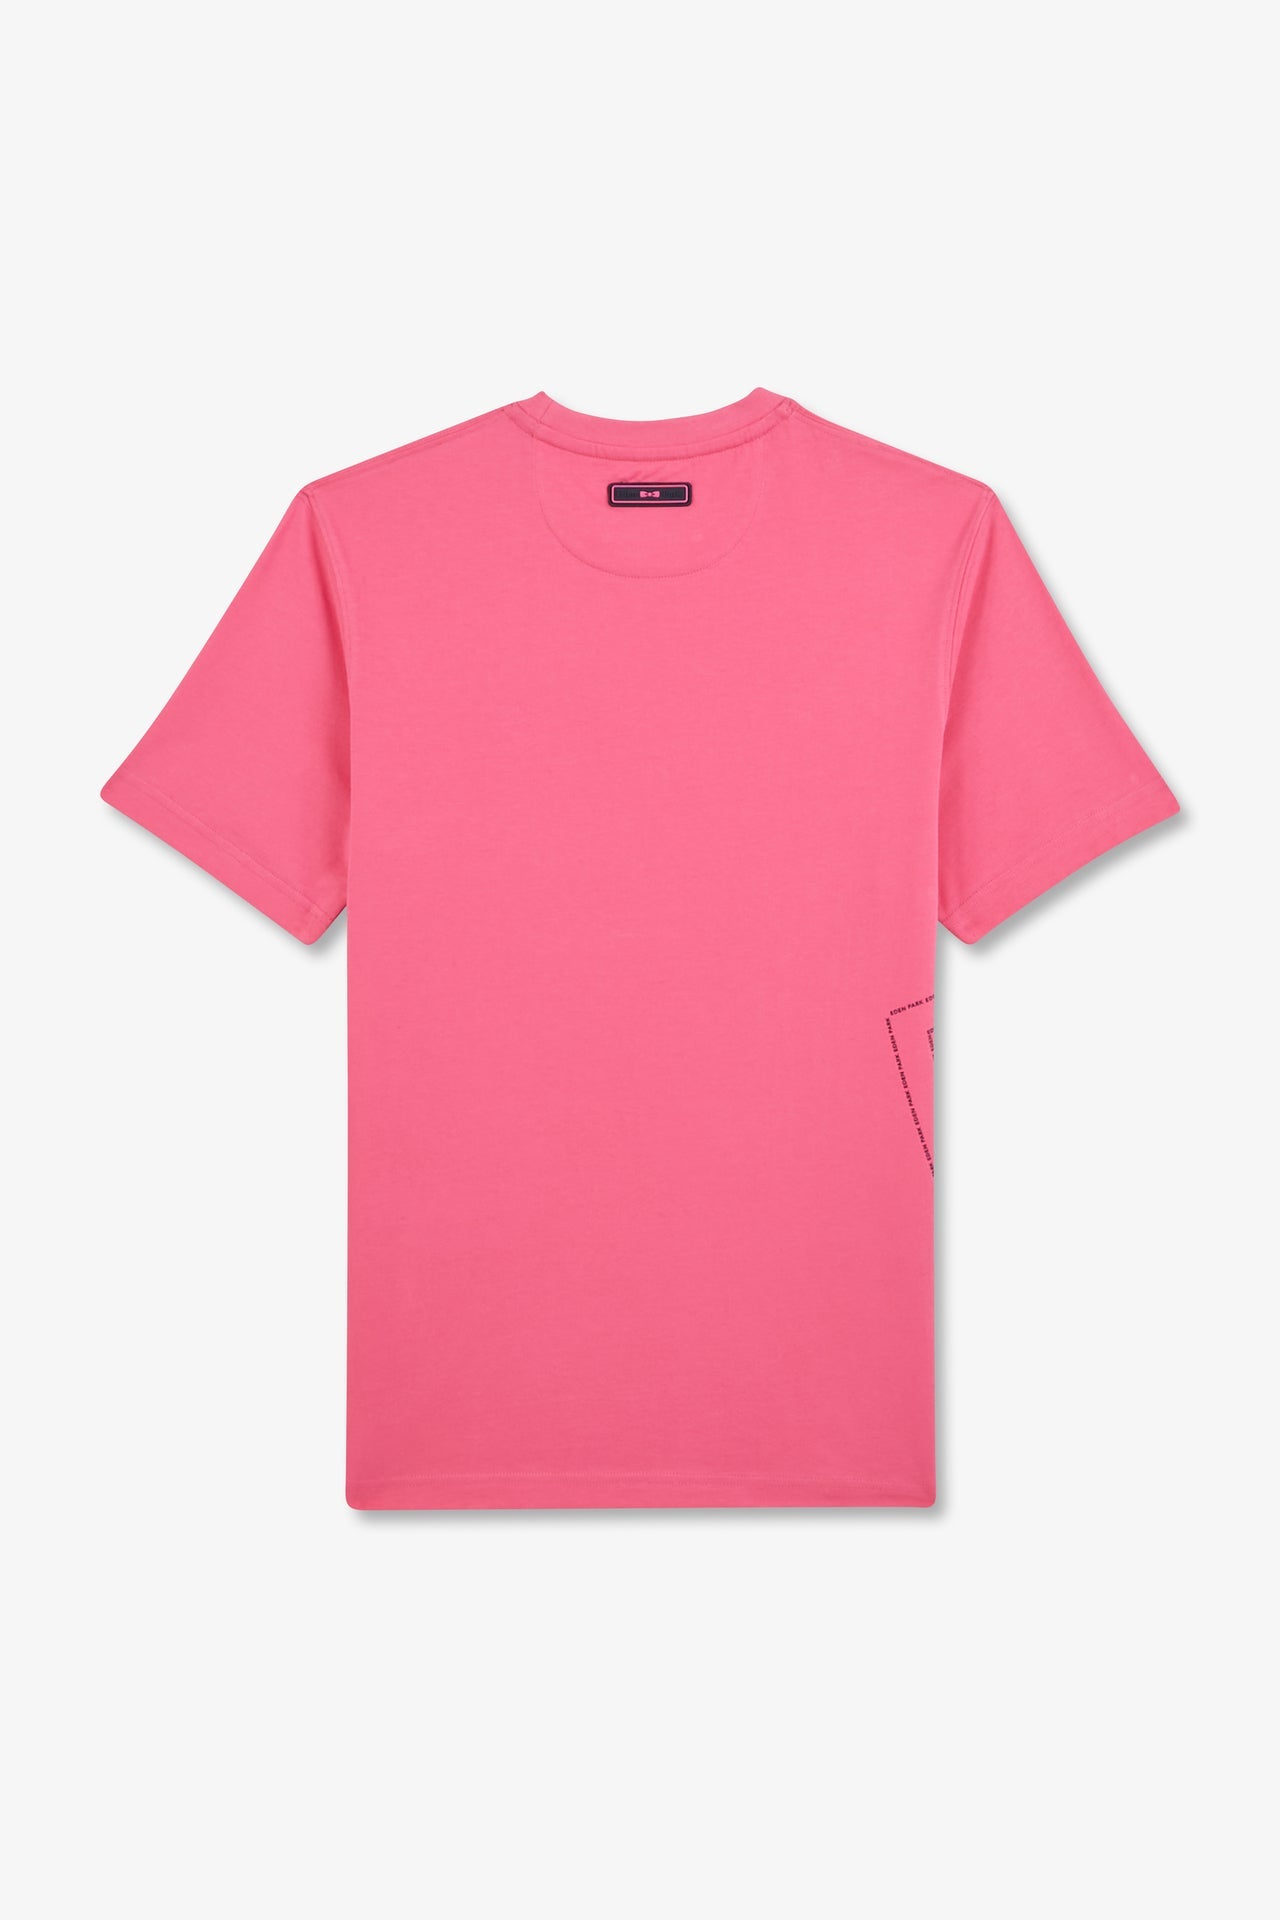 T-shirt rose imprimé Eden Park - Image 5